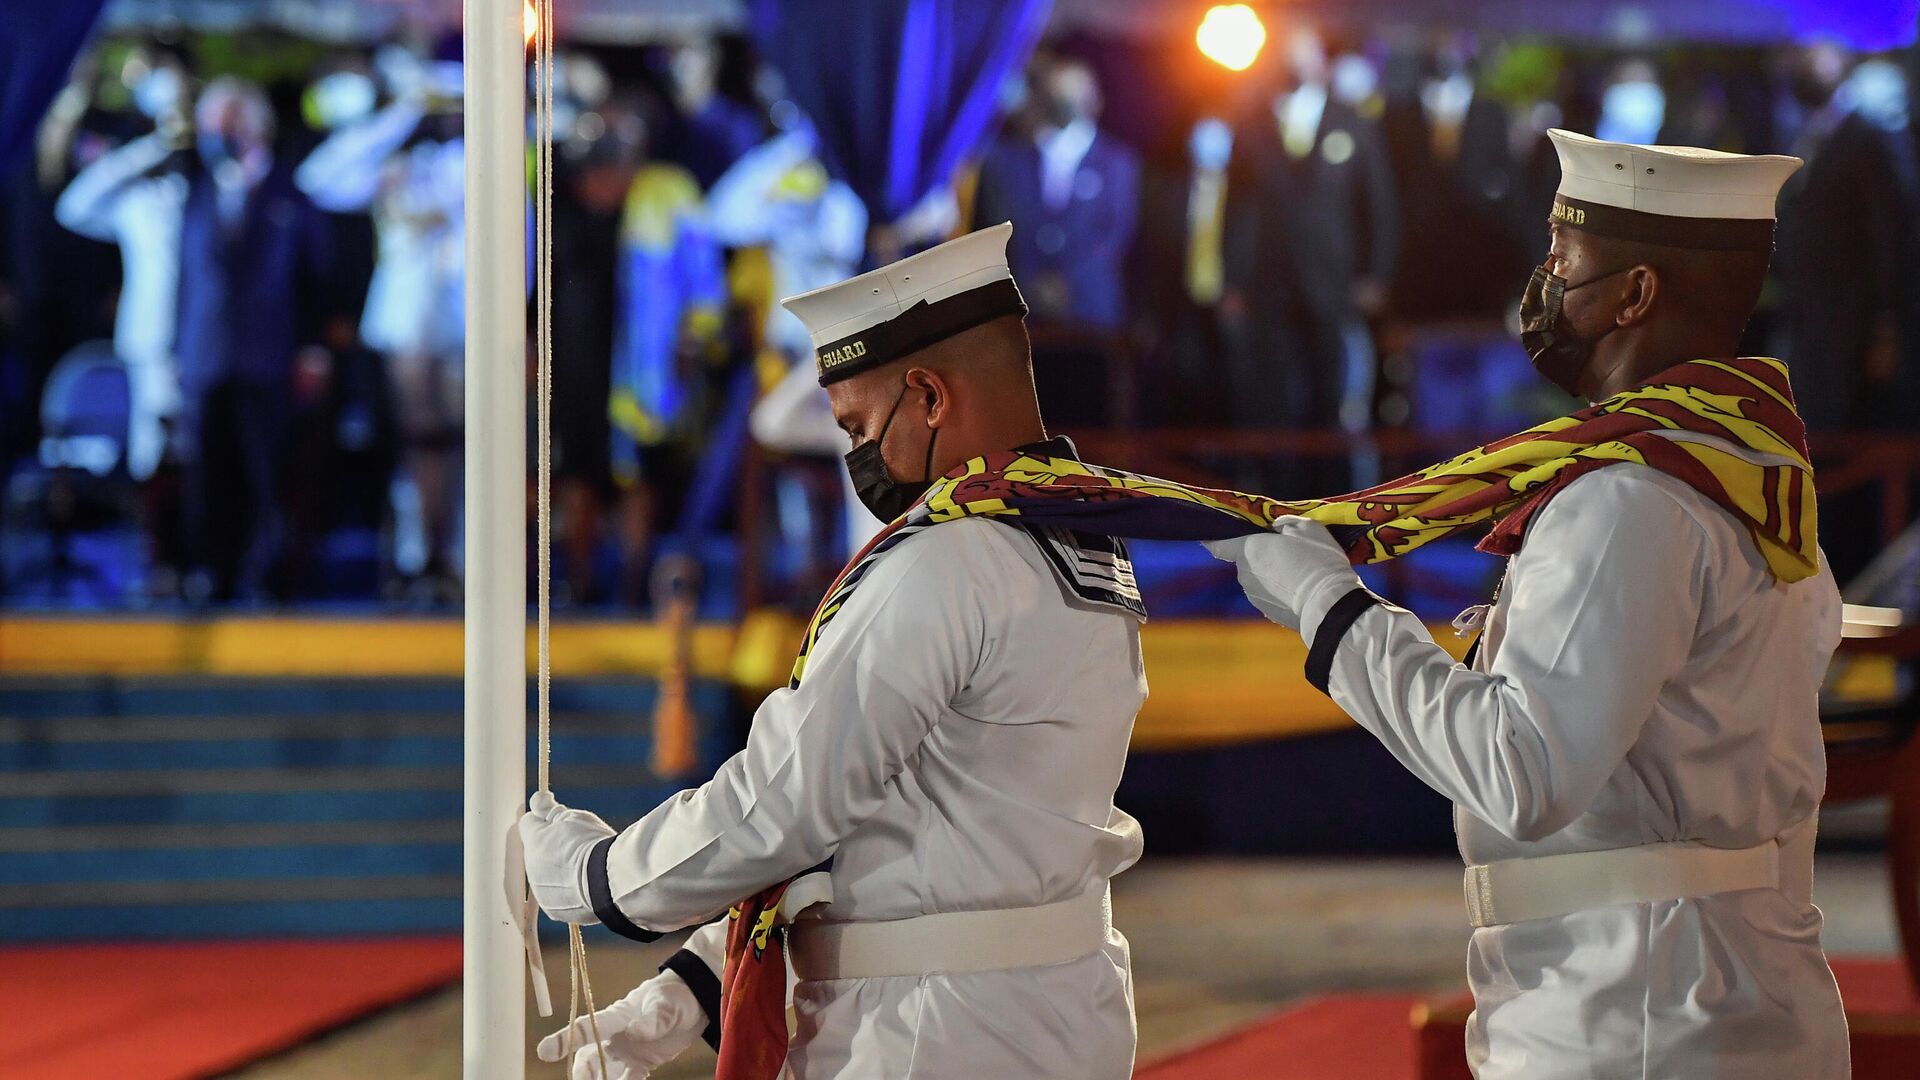 Снятие Королевского штандарта Великобритании во время церемонии инаугурации президента Барбадоса - РИА Новости, 1920, 30.11.2021